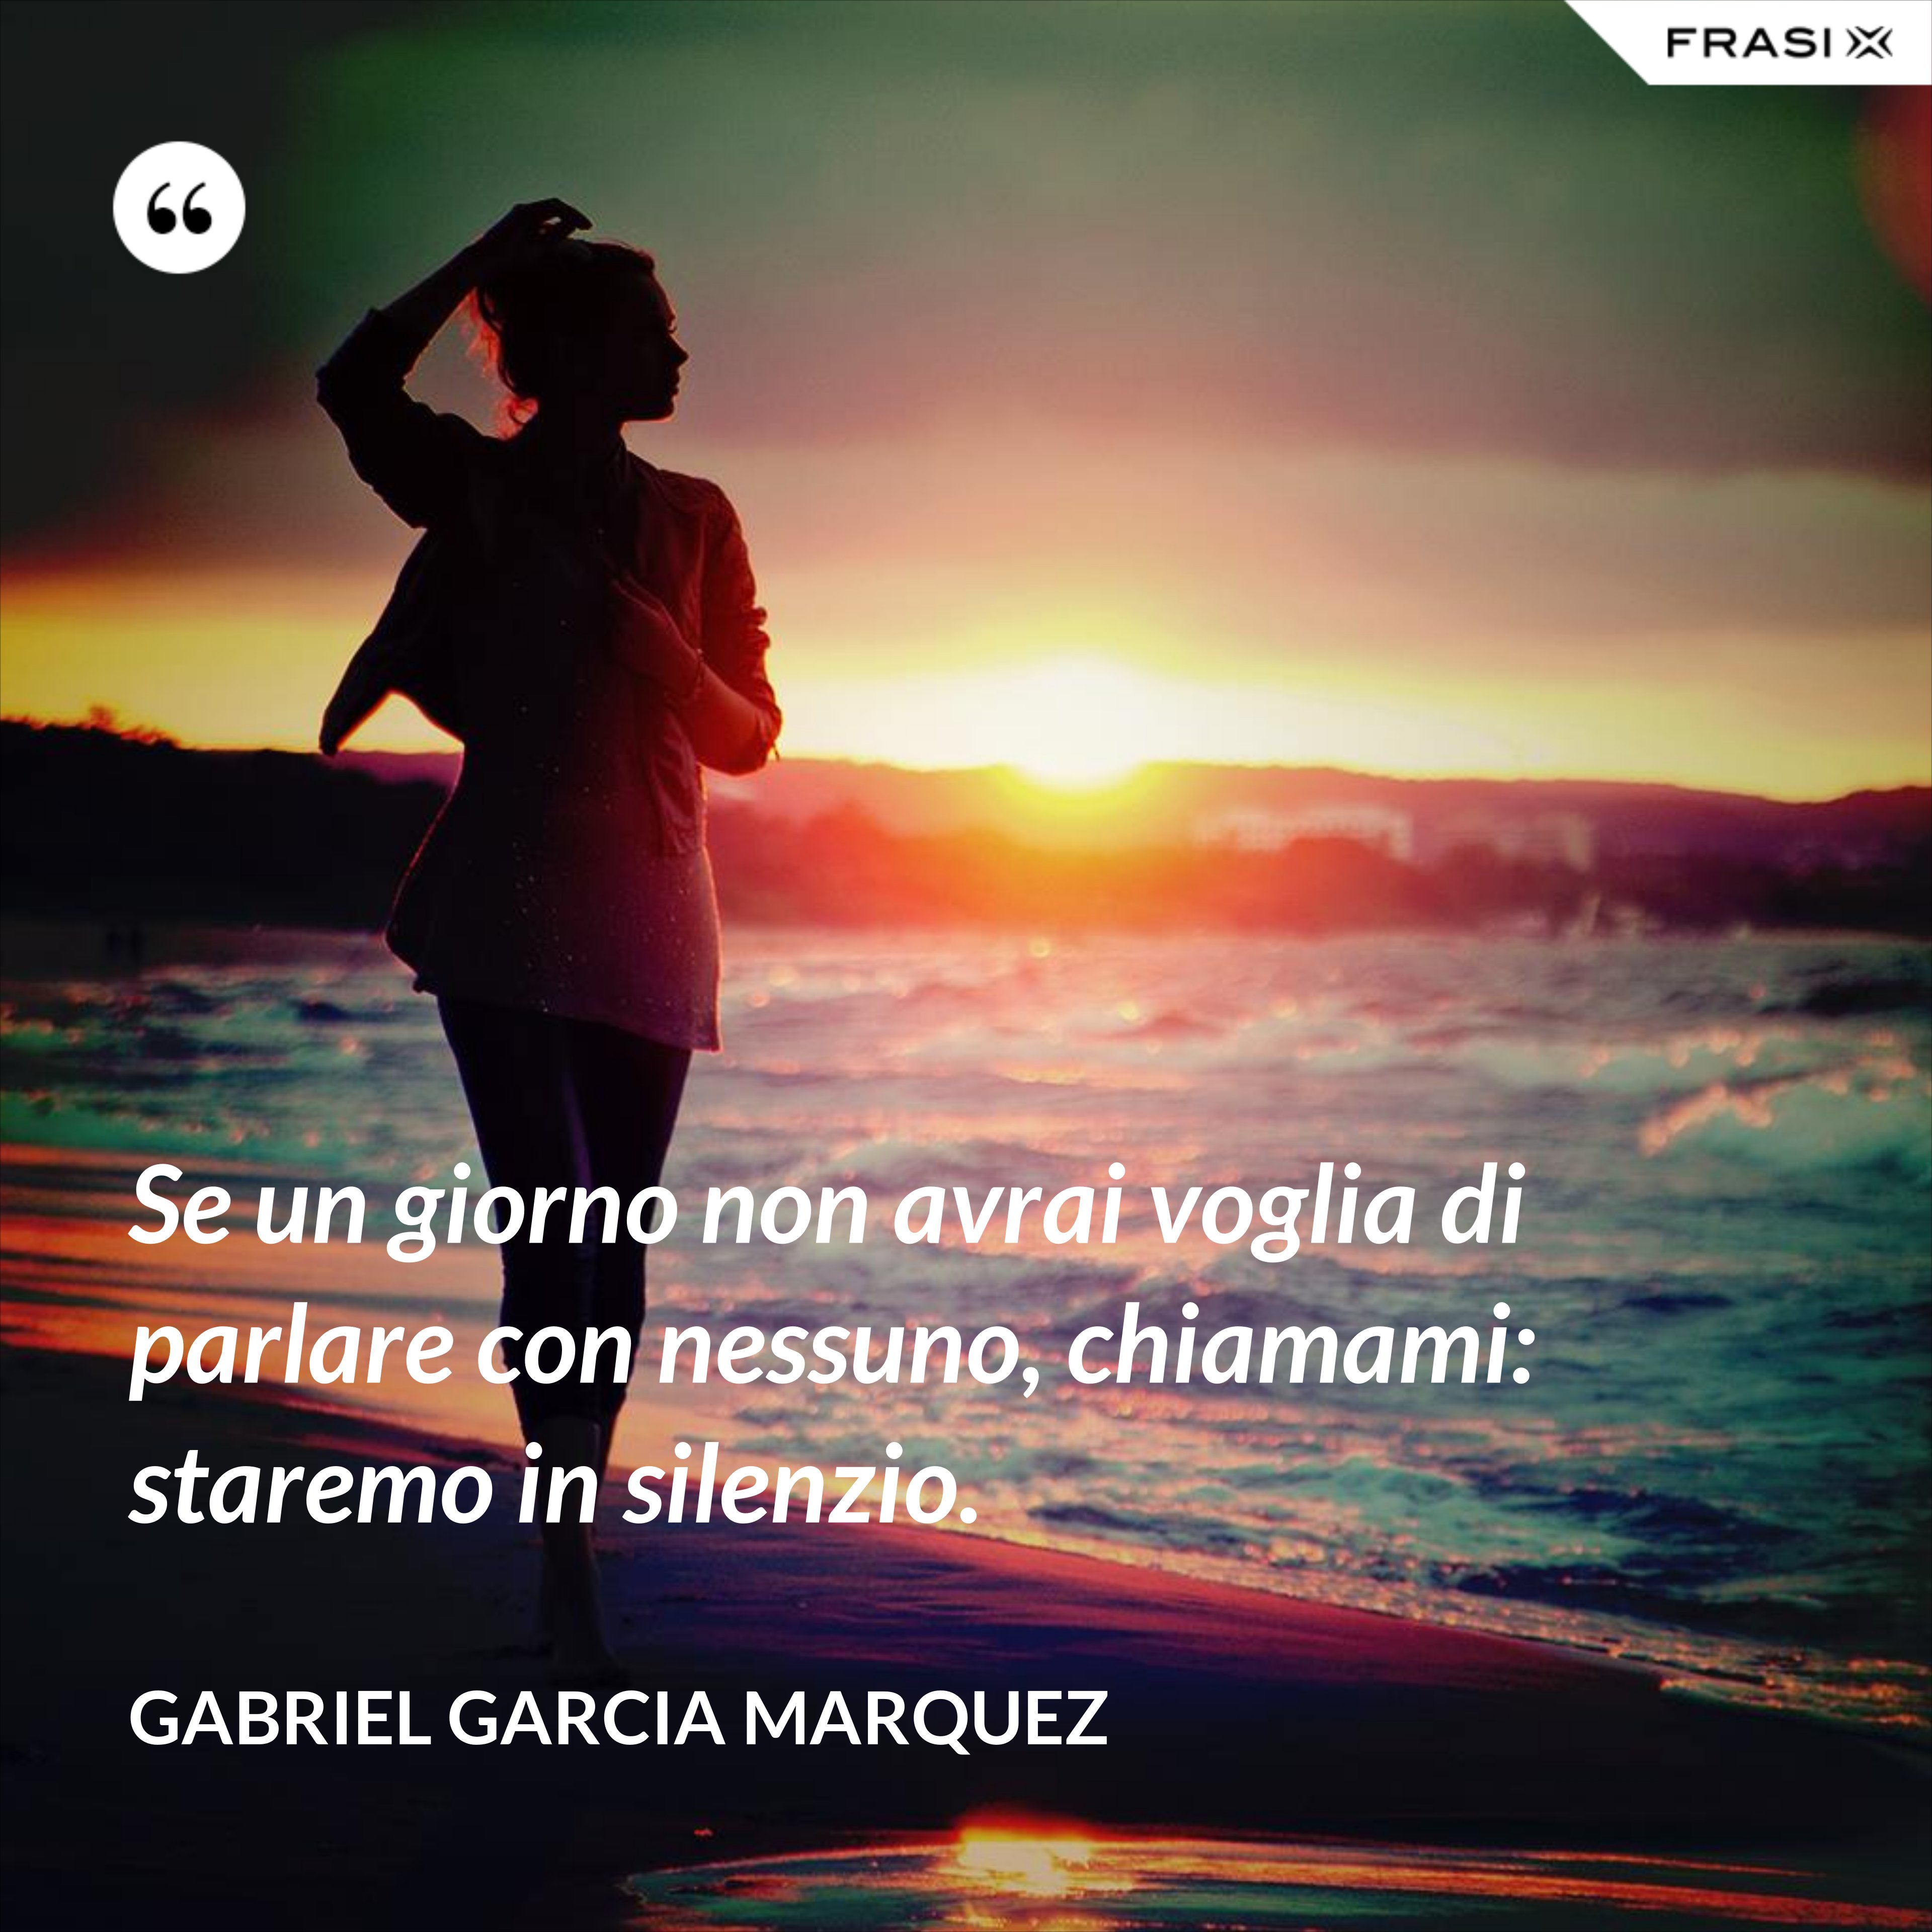 Se un giorno non avrai voglia di parlare con nessuno, chiamami: staremo in silenzio. - Gabriel Garcia Marquez